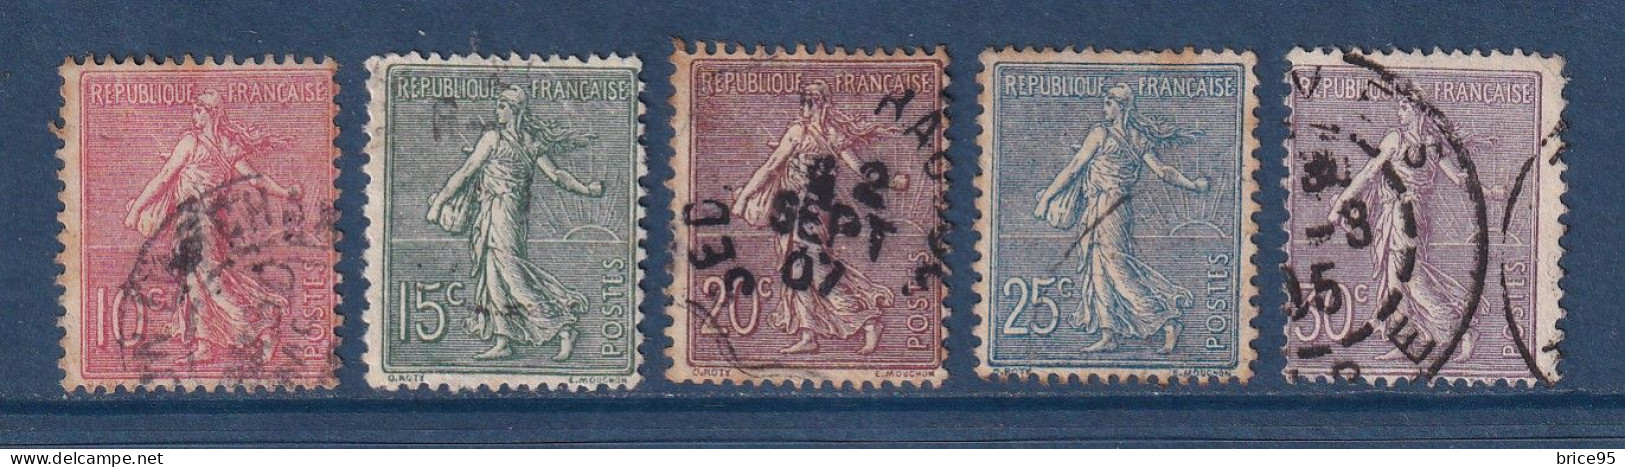 France - YT N° 129 à 133 - Oblitéré - 1903 - Used Stamps